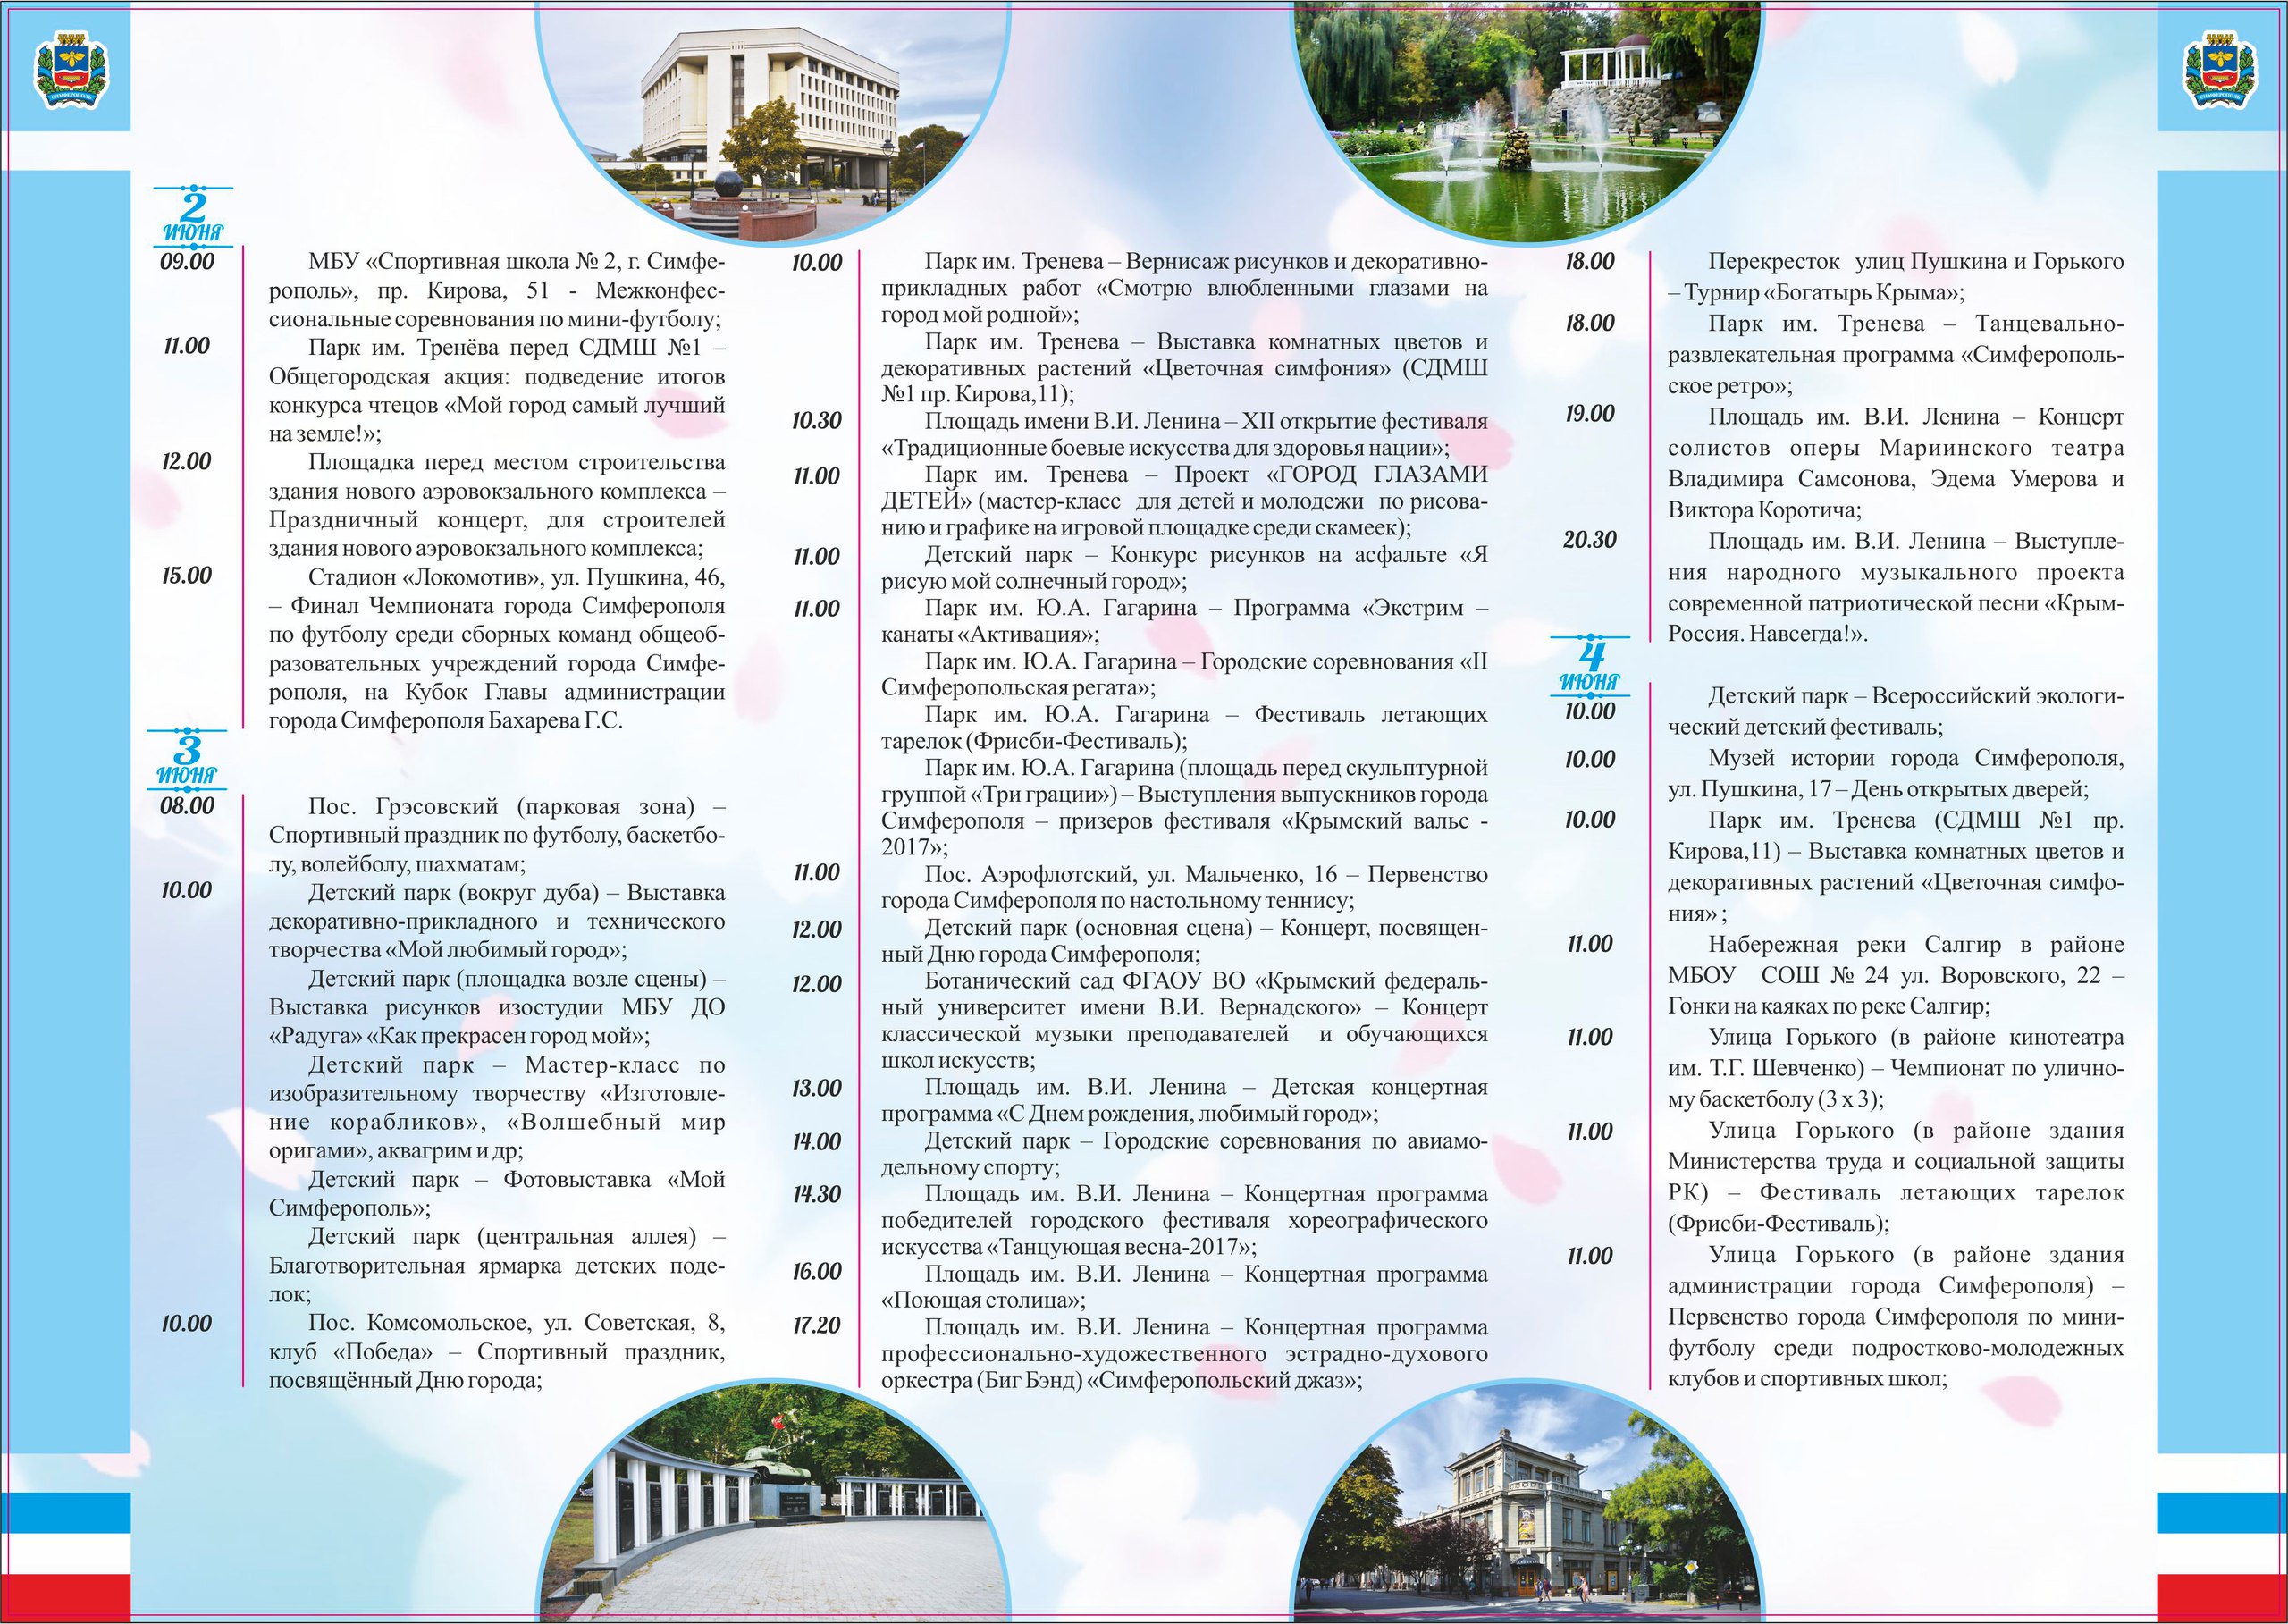 День города Симферополя 2017 программа мероприятий, праздничный салют